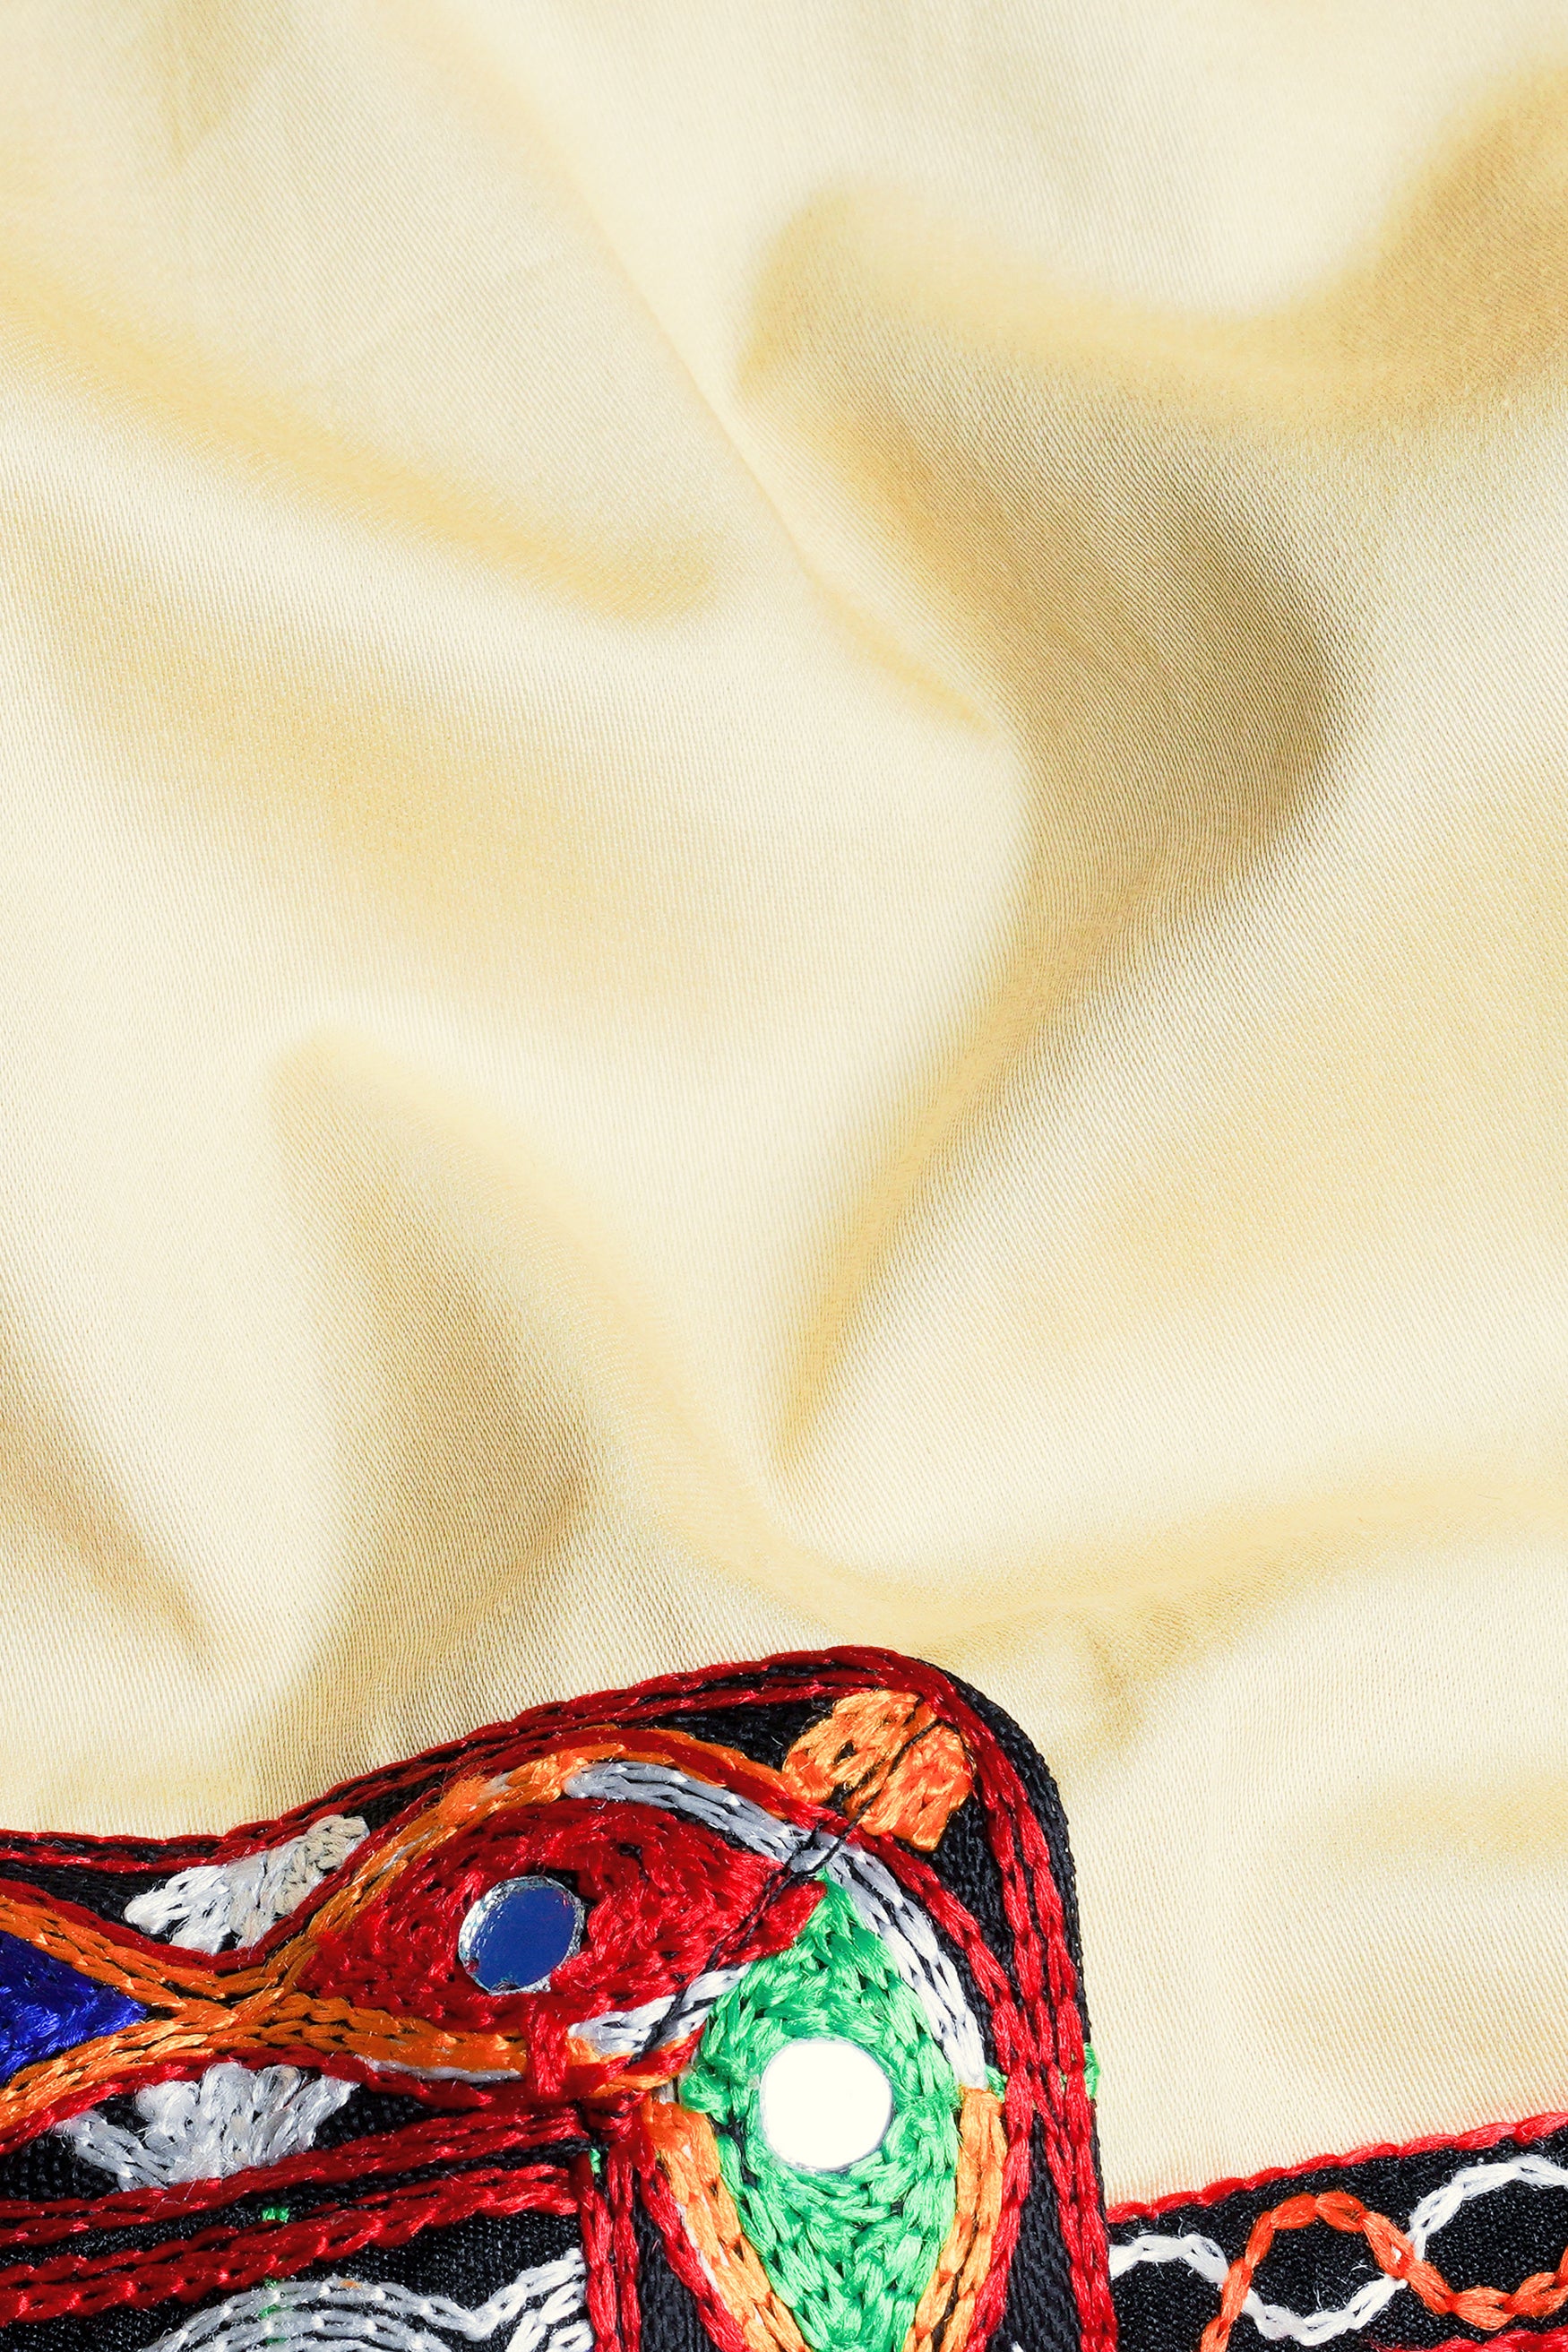 Chamois Beige Horizontal Kutch Work Patches with Mirror Work Subtle Sheen Super Soft Premium Cotton Designer Kurta Set